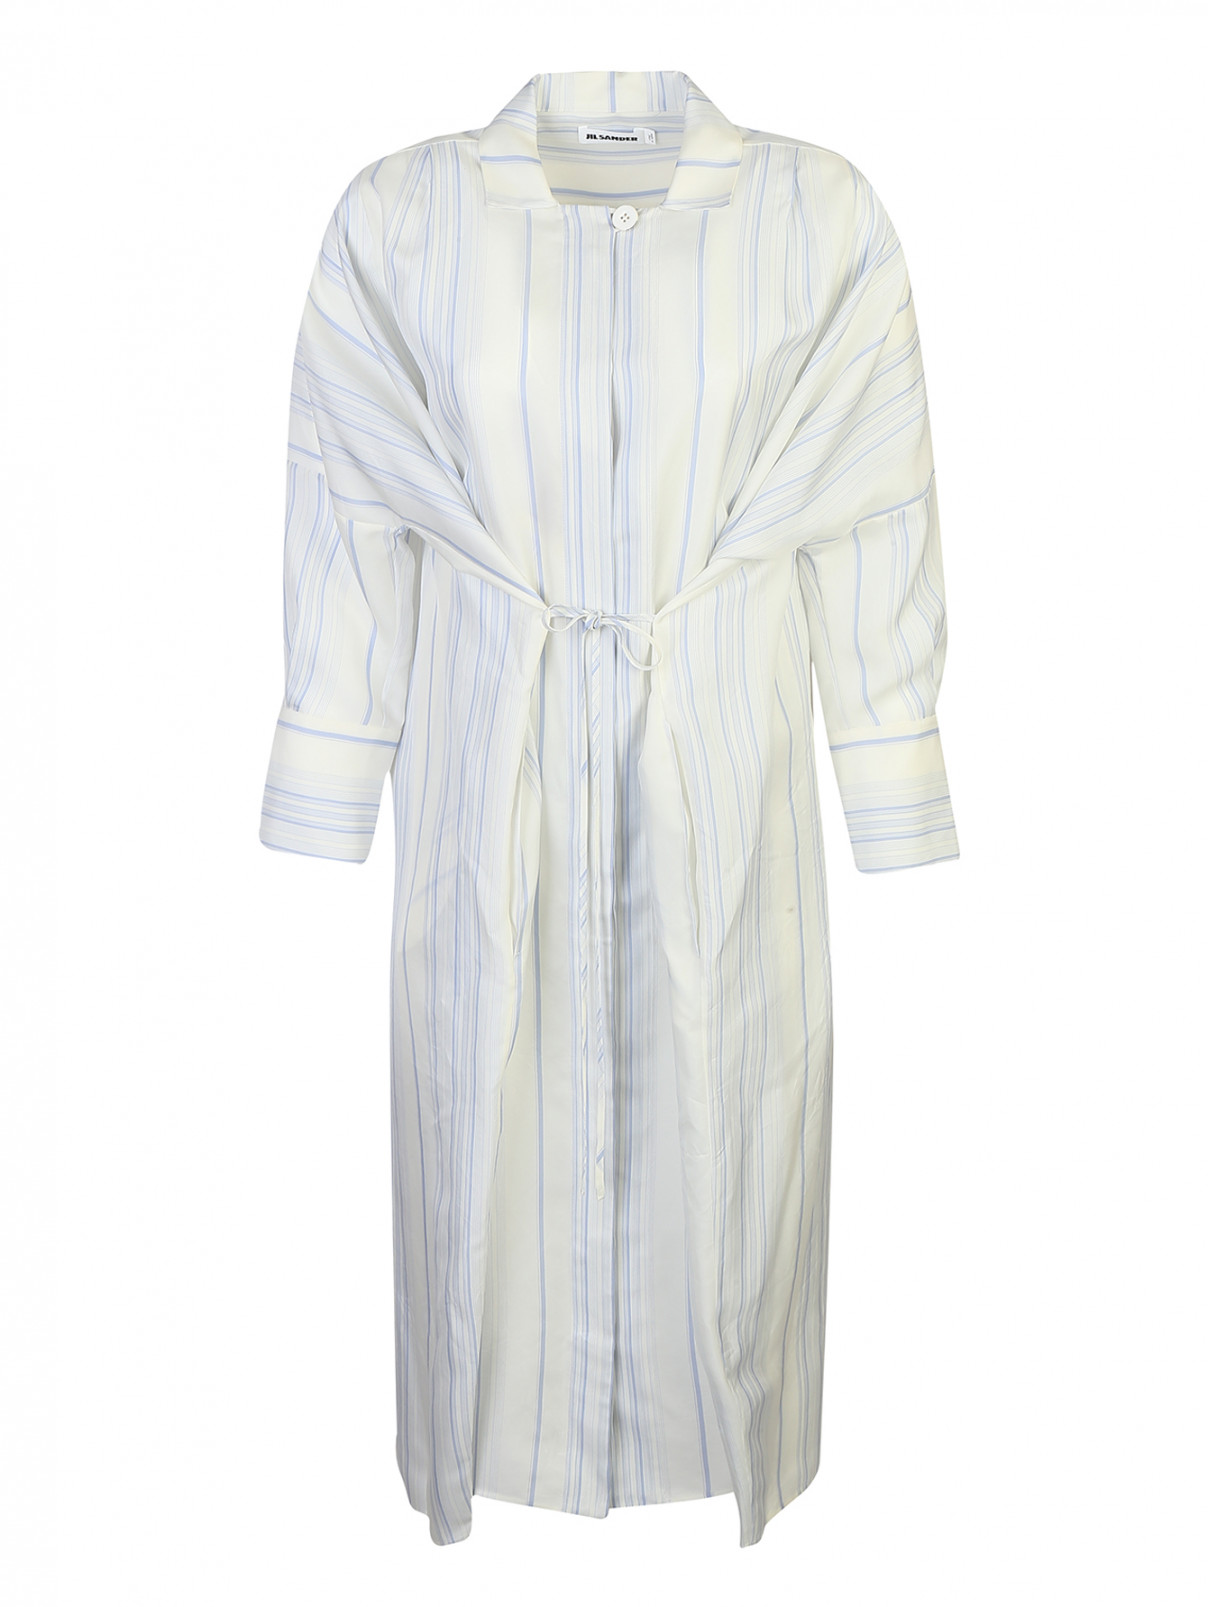 Платье-рубашка, из вискозы, с узором полоска Jil Sander  –  Общий вид  – Цвет:  Белый